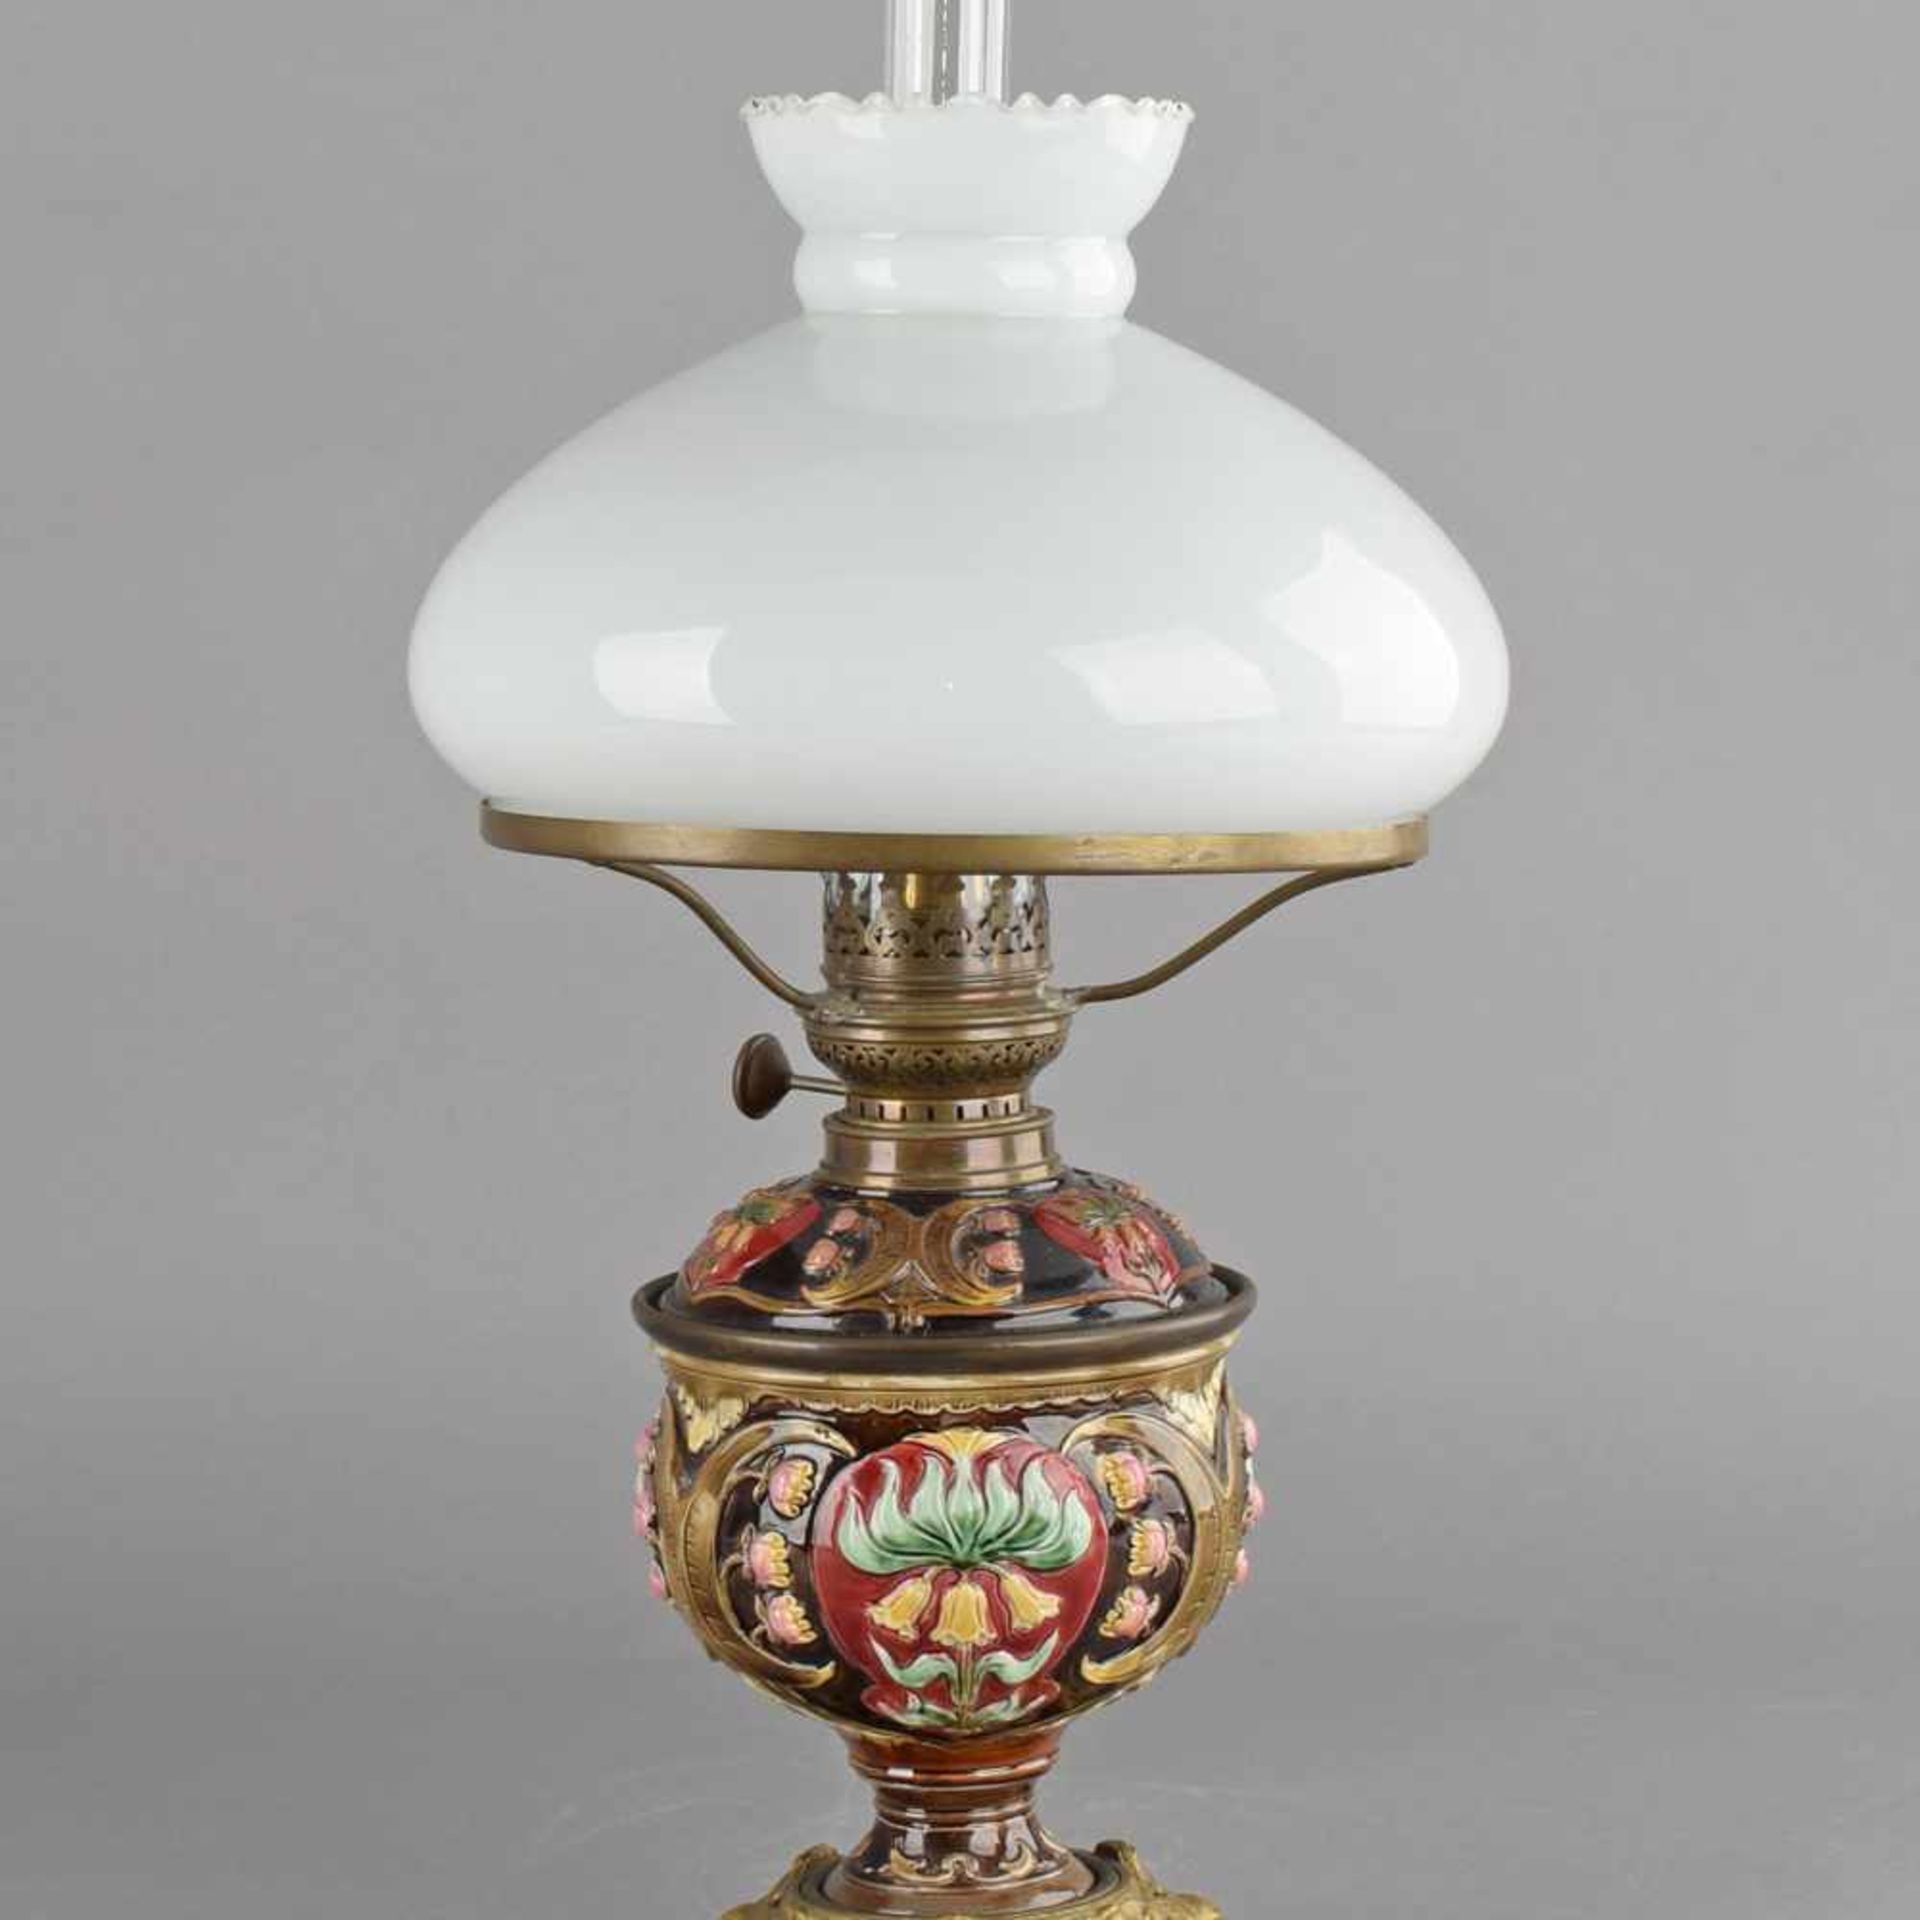 Historismus-Petroleumlampe einflammig, Korpus aus Feinsteinzeug mit reichem floral-ornamentalen